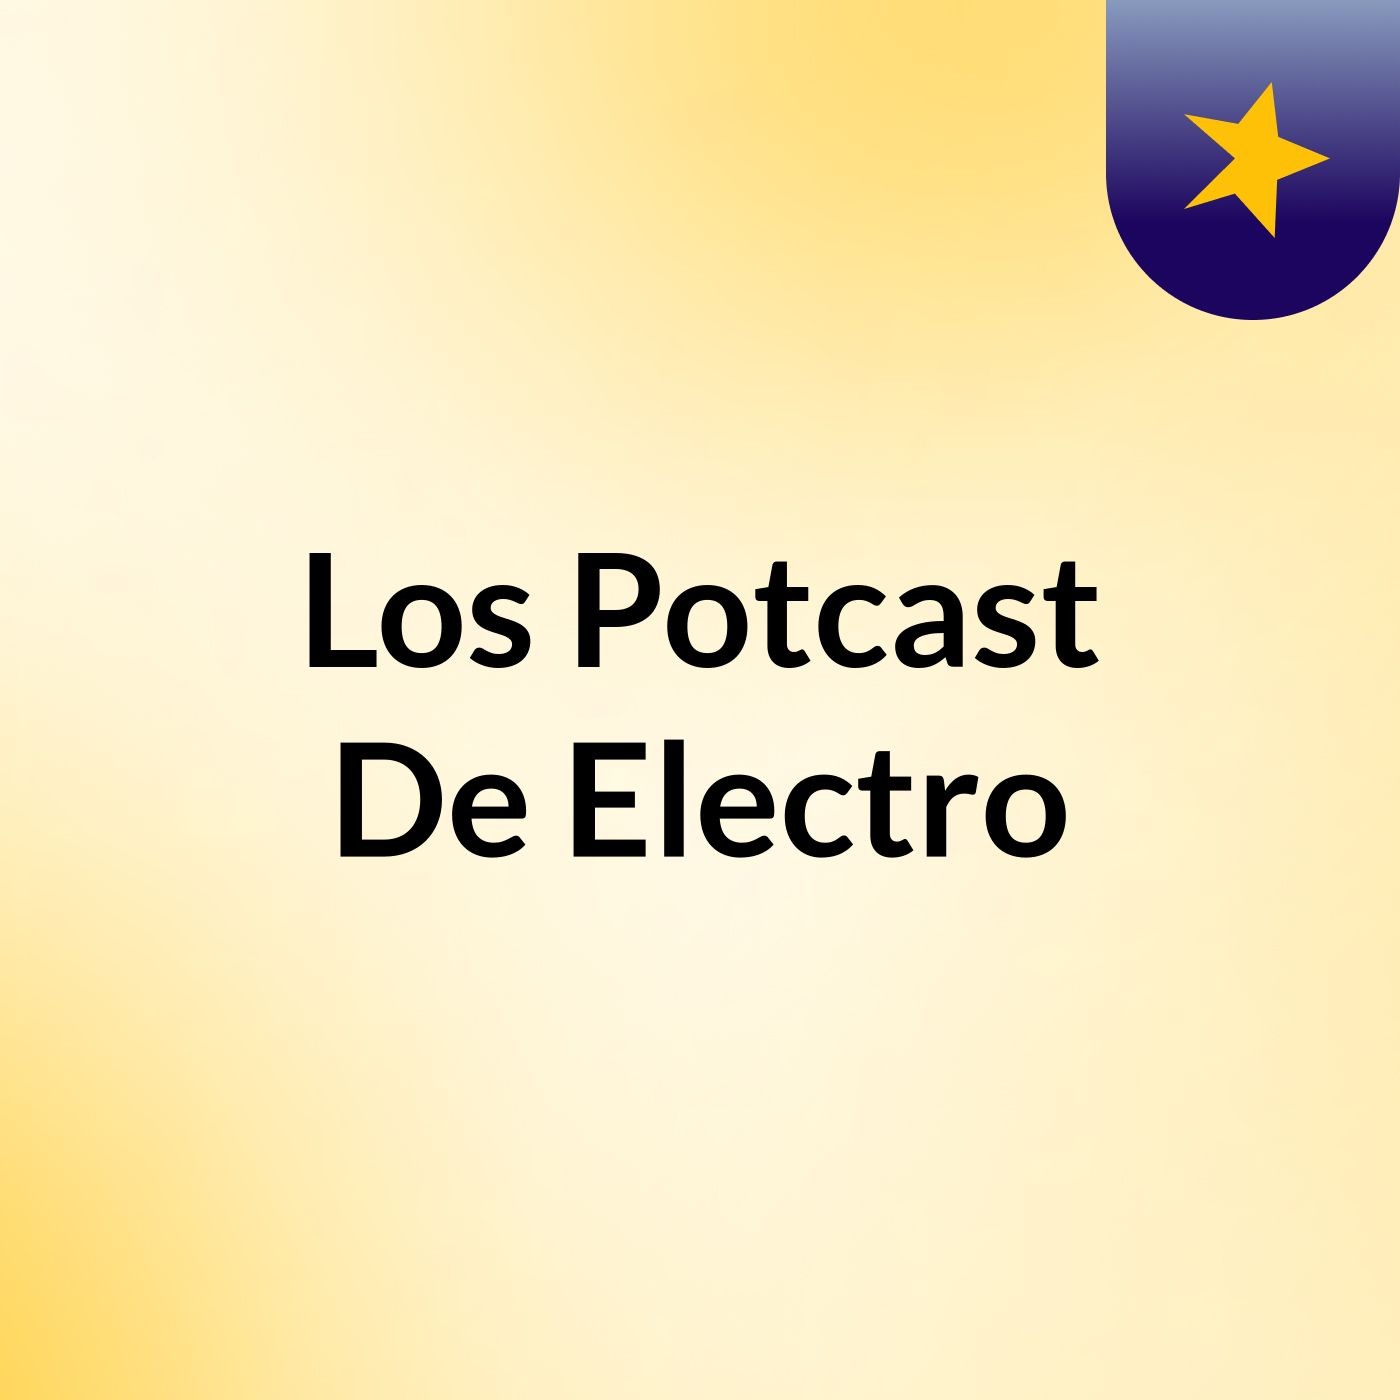 Los Potcast De Electro